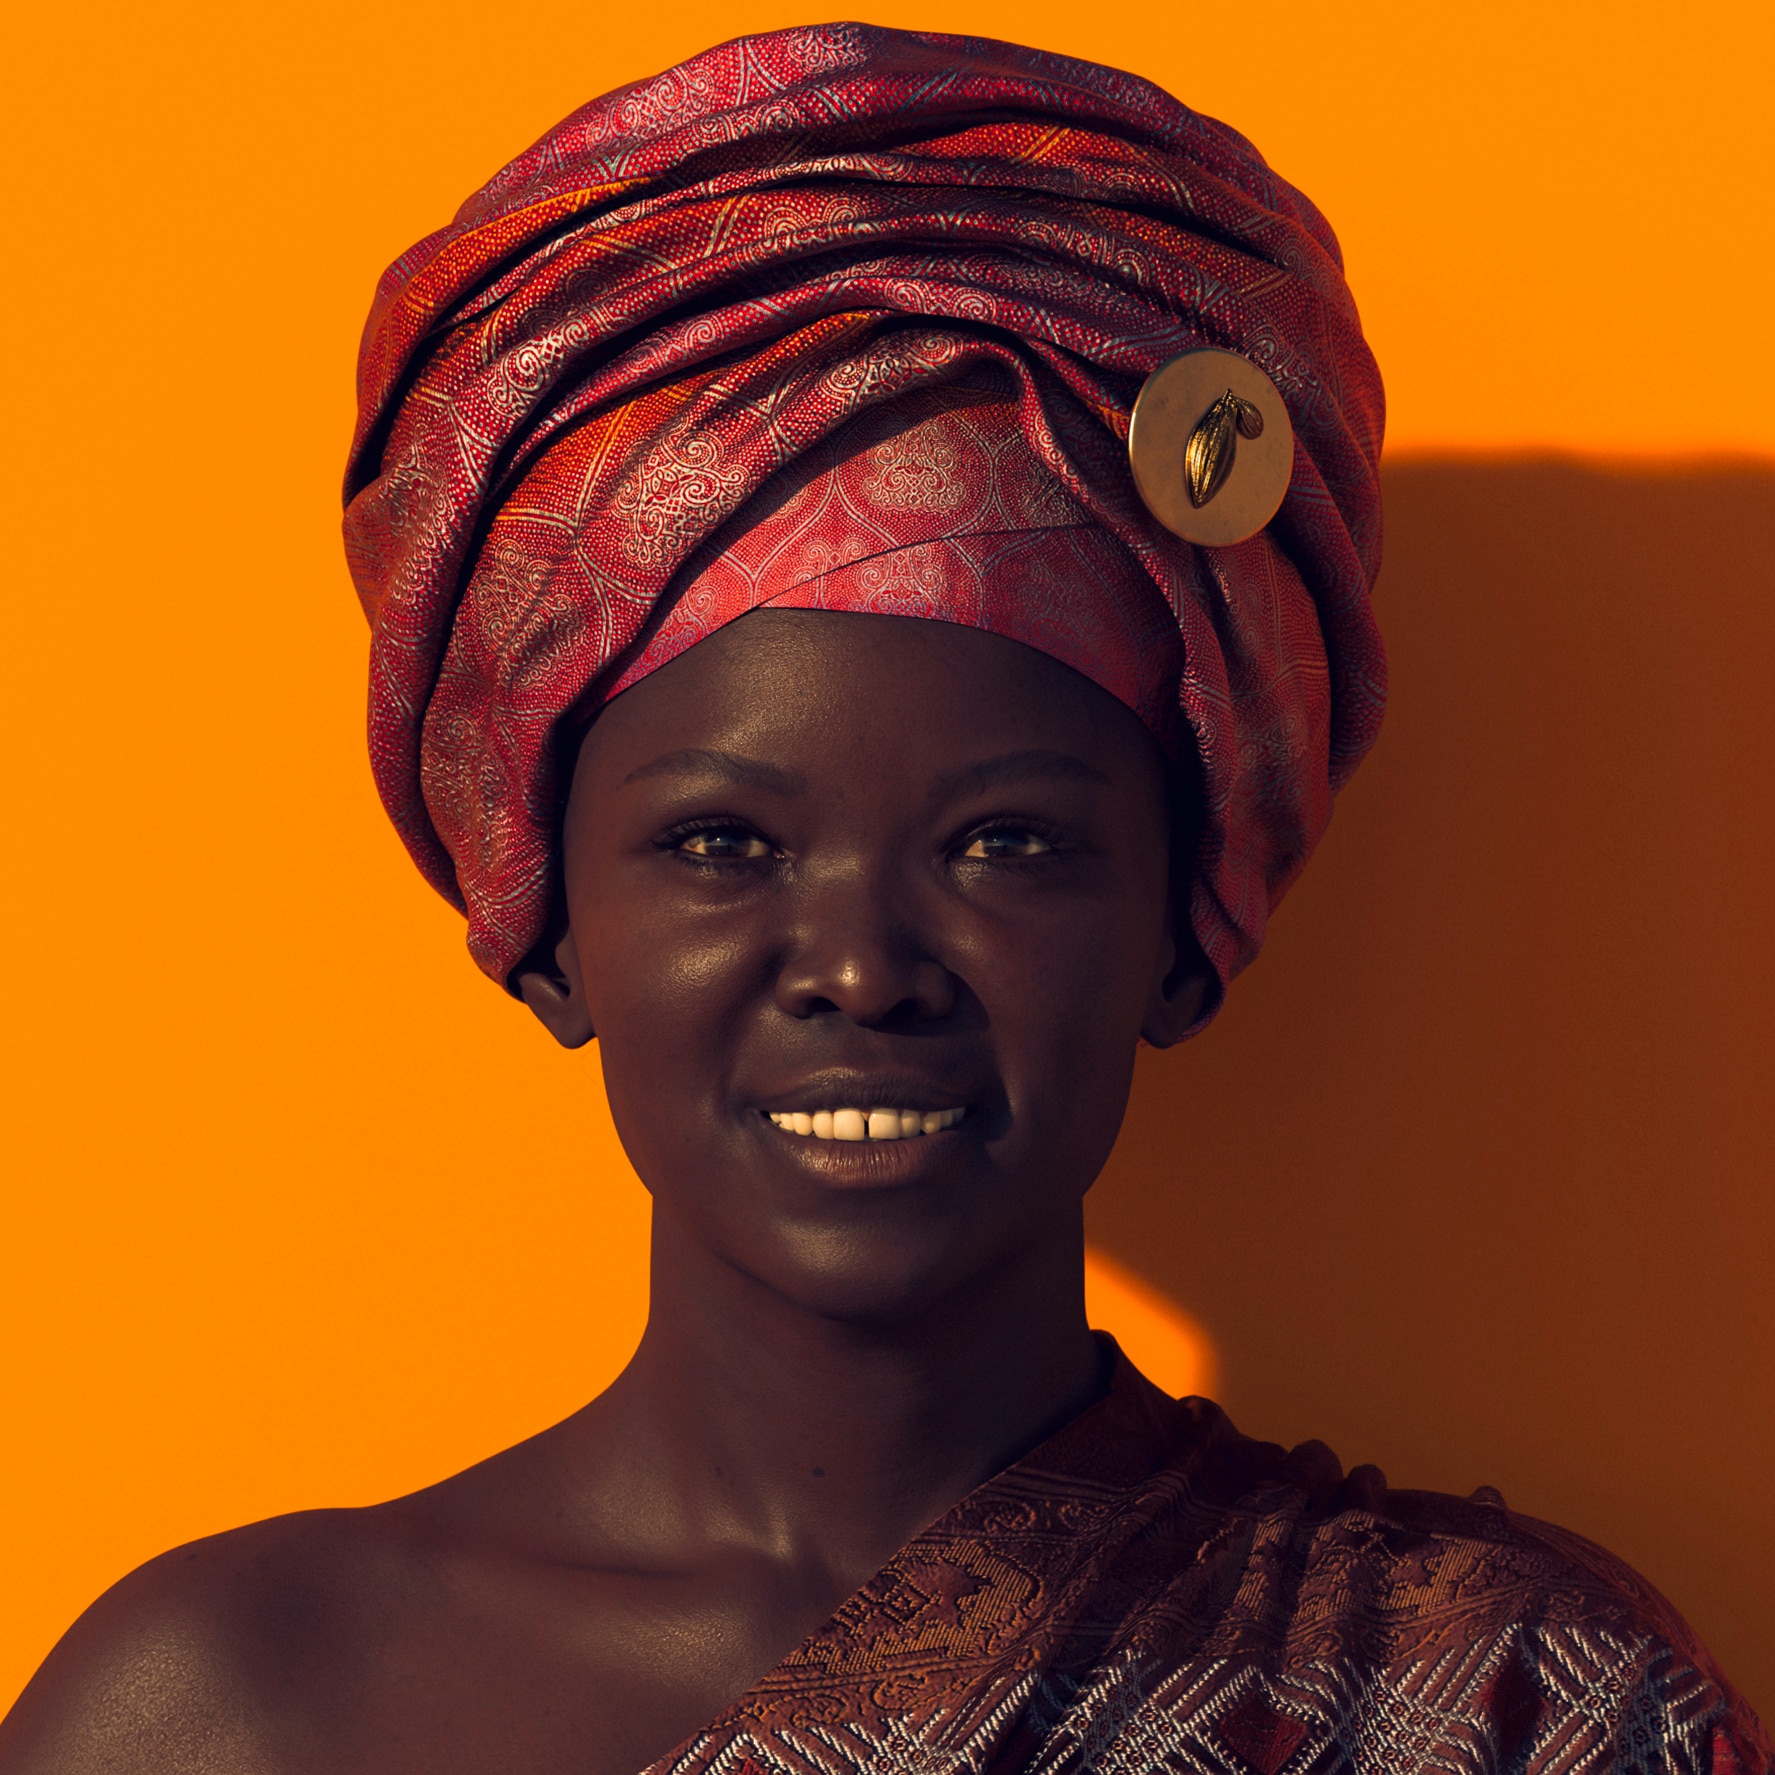 Porträt einer afrikanischen Frau, die ein großes Tuch um den Kopf gewickelt hat, auf orangenem Hintergrund